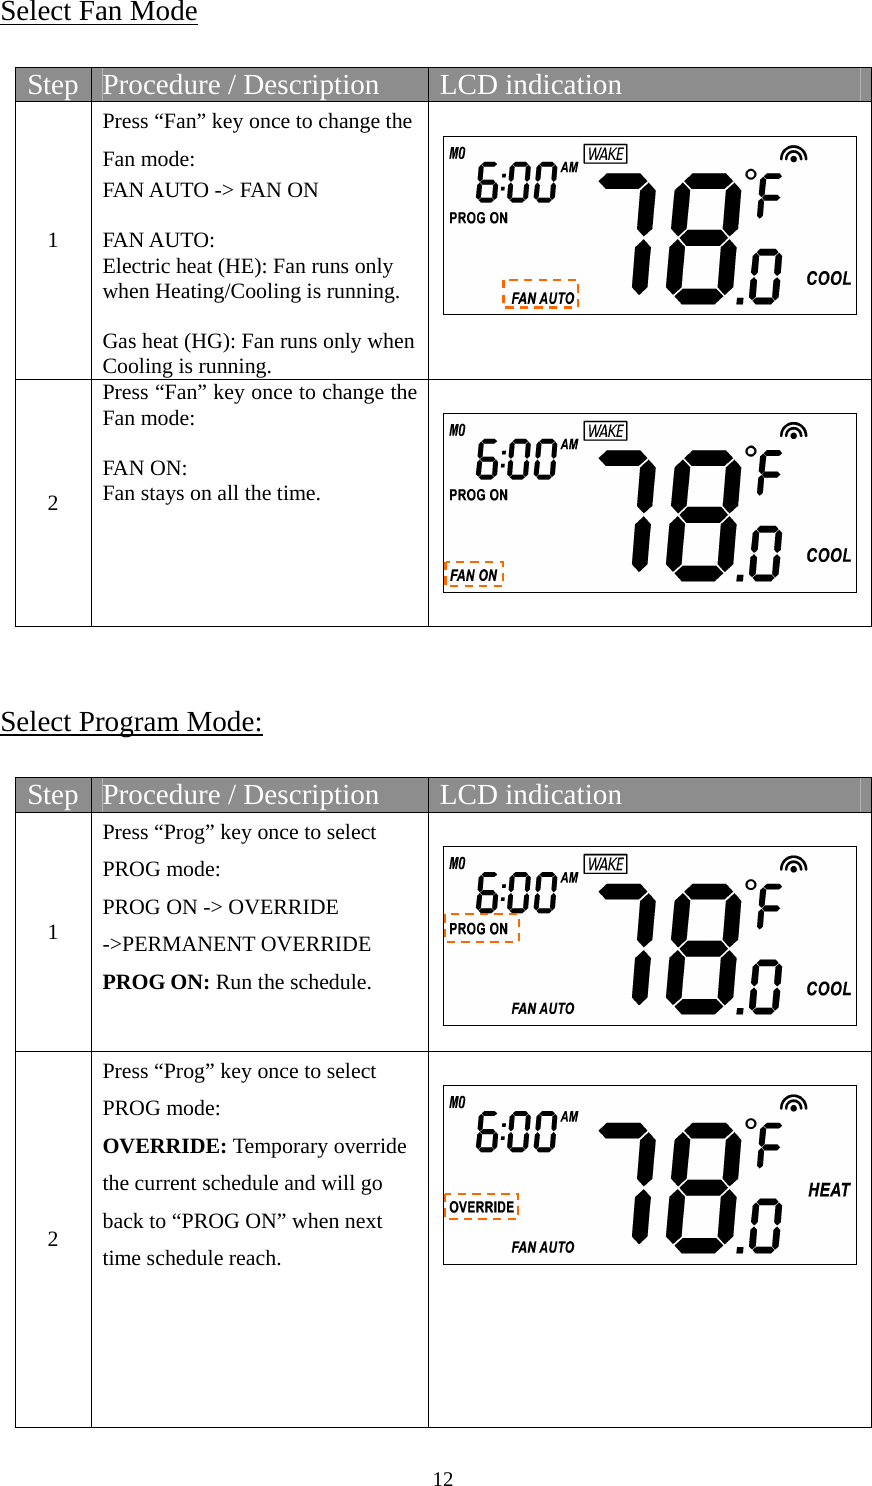 12  Select Fan Mode  Step  Procedure / Description  LCD indication 1 Press “Fan” key once to change the Fan mode: FAN AUTO -&gt; FAN ON  FAN AUTO: Electric heat (HE): Fan runs only when Heating/Cooling is running.  Gas heat (HG): Fan runs only when Cooling is running.   2 Press “Fan” key once to change the Fan mode:  FAN ON:   Fan stays on all the time.      Select Program Mode:  Step  Procedure / Description  LCD indication 1 Press “Prog” key once to select PROG mode: PROG ON -&gt; OVERRIDE -&gt;PERMANENT OVERRIDE PROG ON: Run the schedule.   2 Press “Prog” key once to select PROG mode: OVERRIDE: Temporary override the current schedule and will go back to “PROG ON” when next time schedule reach.       